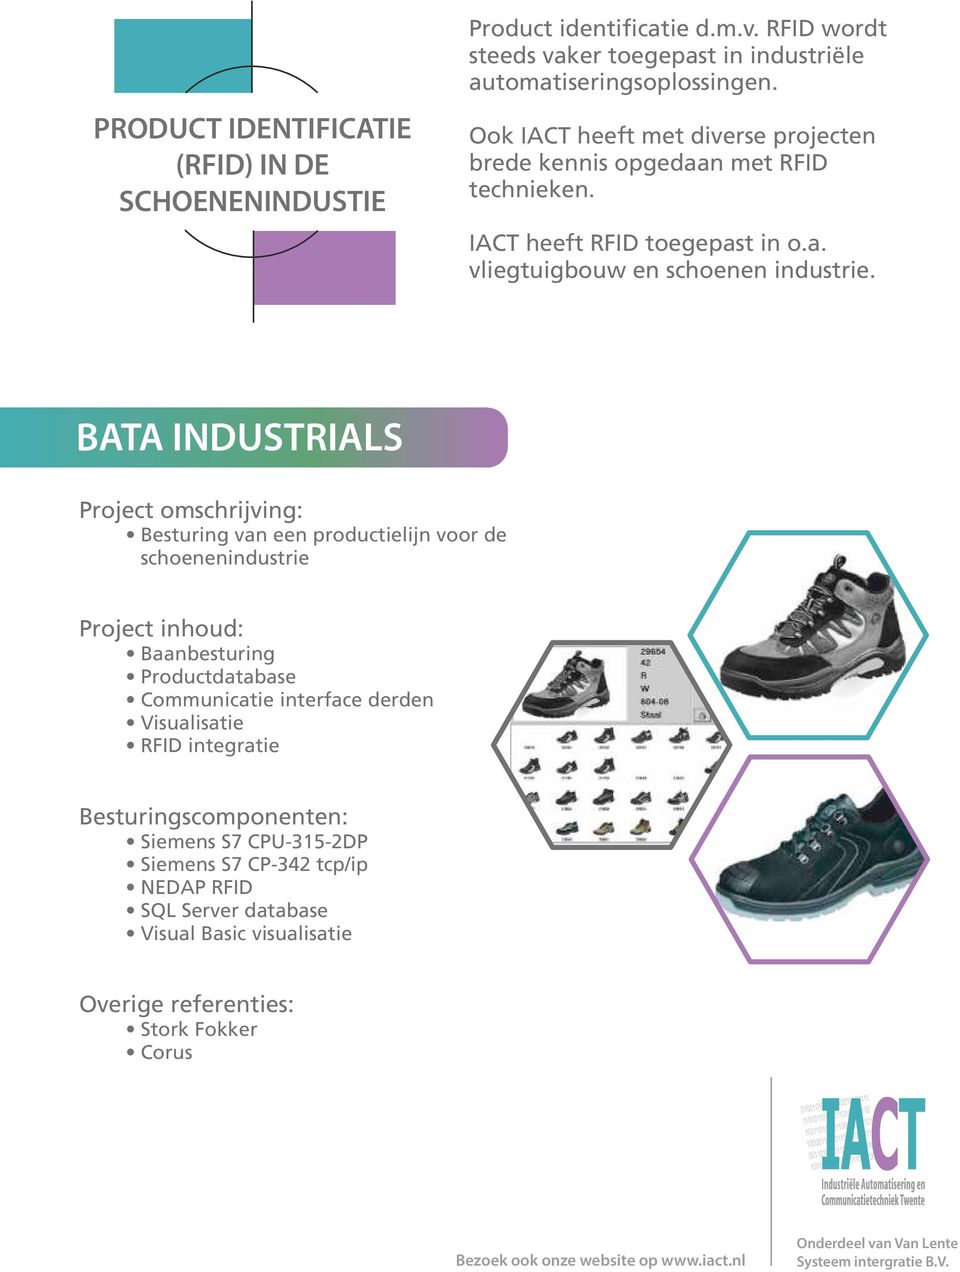 BATA INDUSTRIALS Project omschrijving: Besturing van een productielijn voor de schoenenindustrie Baanbesturing Productdatabase Communicatie interface derden